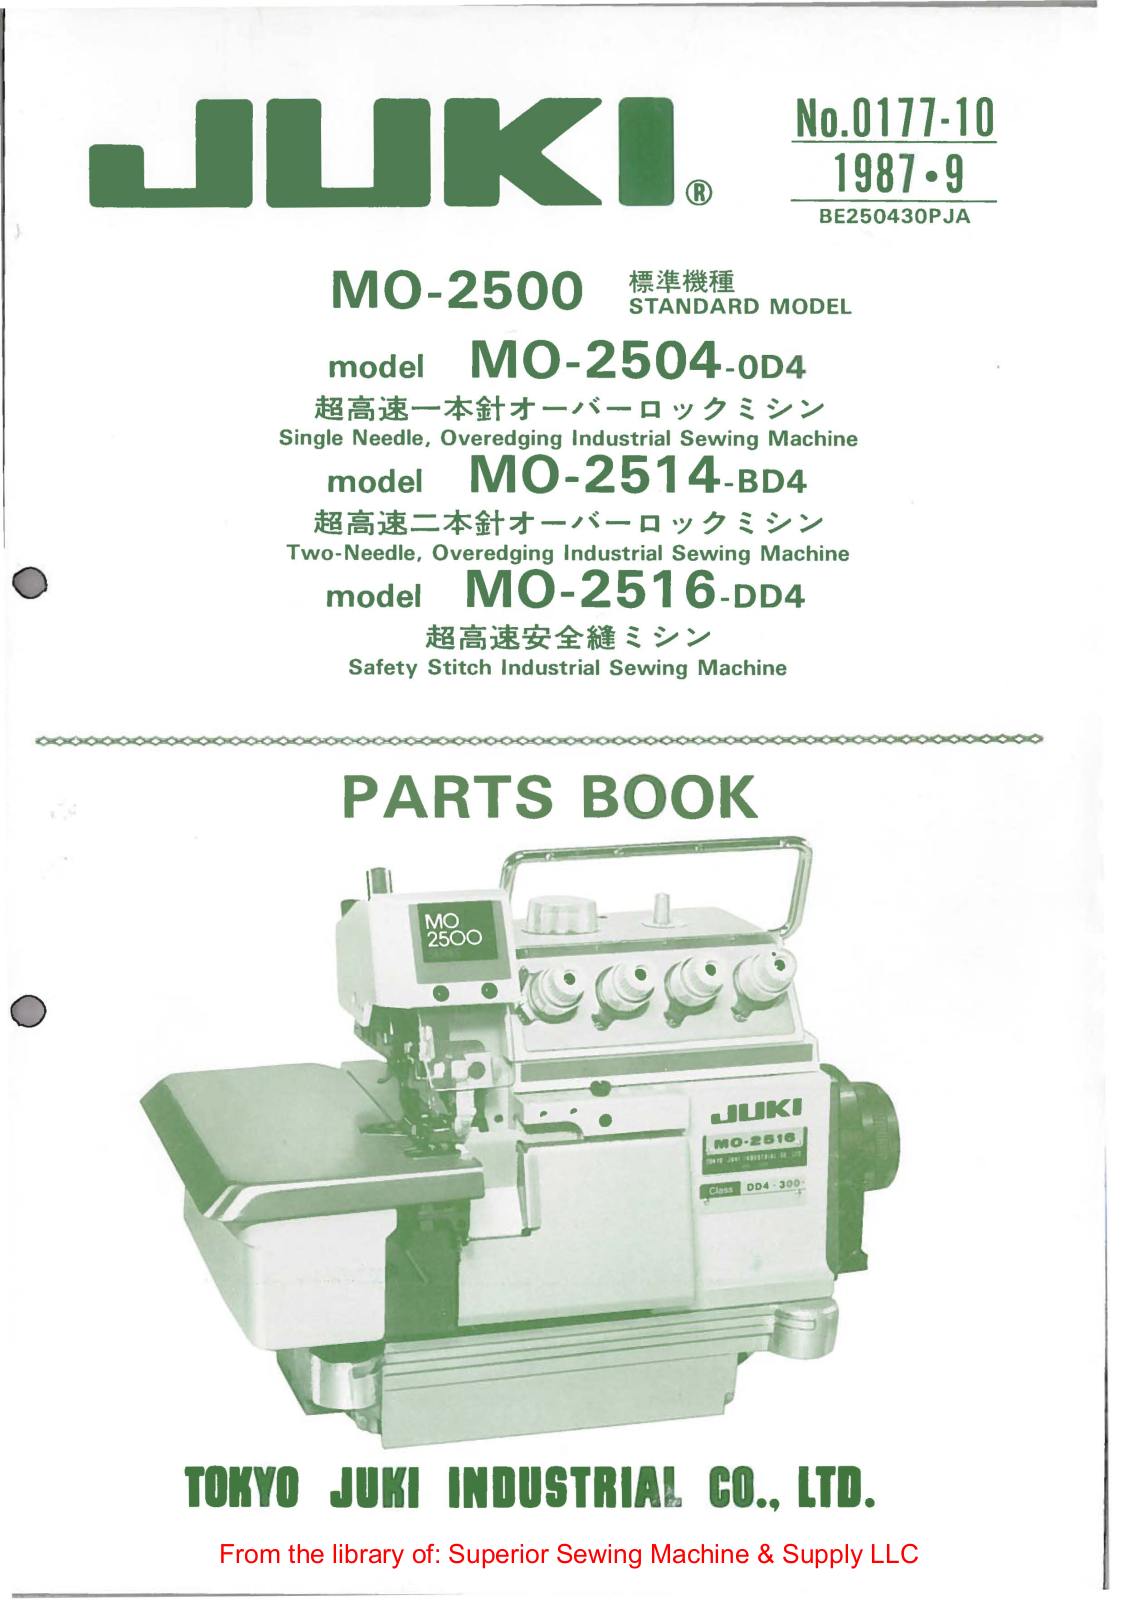 Juki MO-2504-0D4, MO-2514-BD4, MO-2516-DD4 Manual